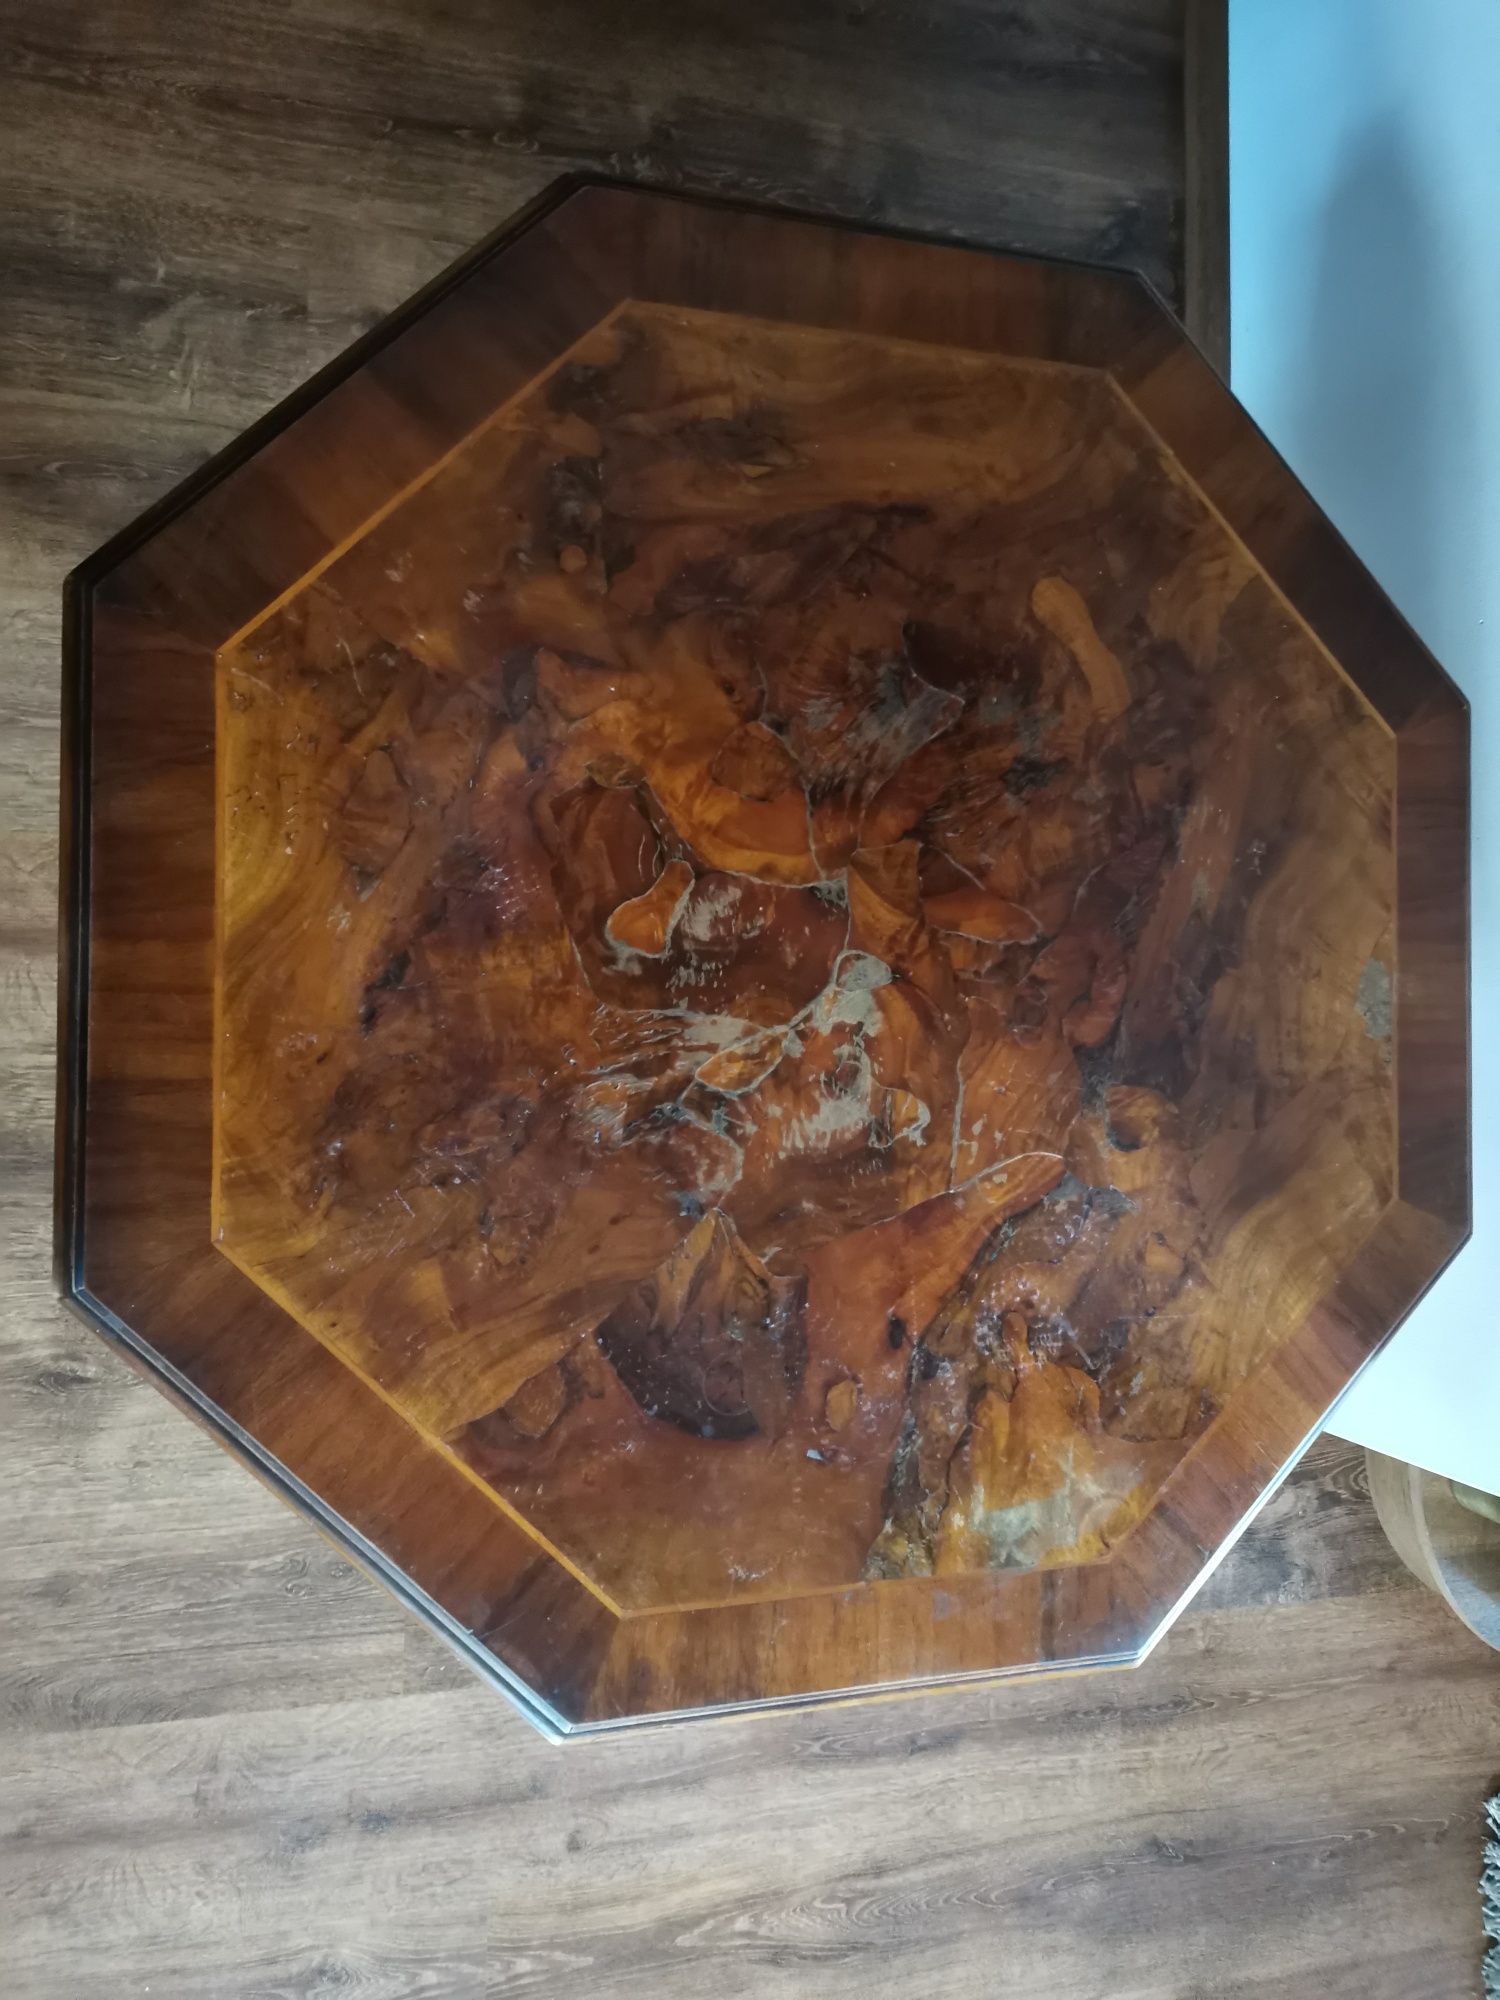 Piękna stylowa ława stolik kawowy salonowa orzechowa drewniana stół